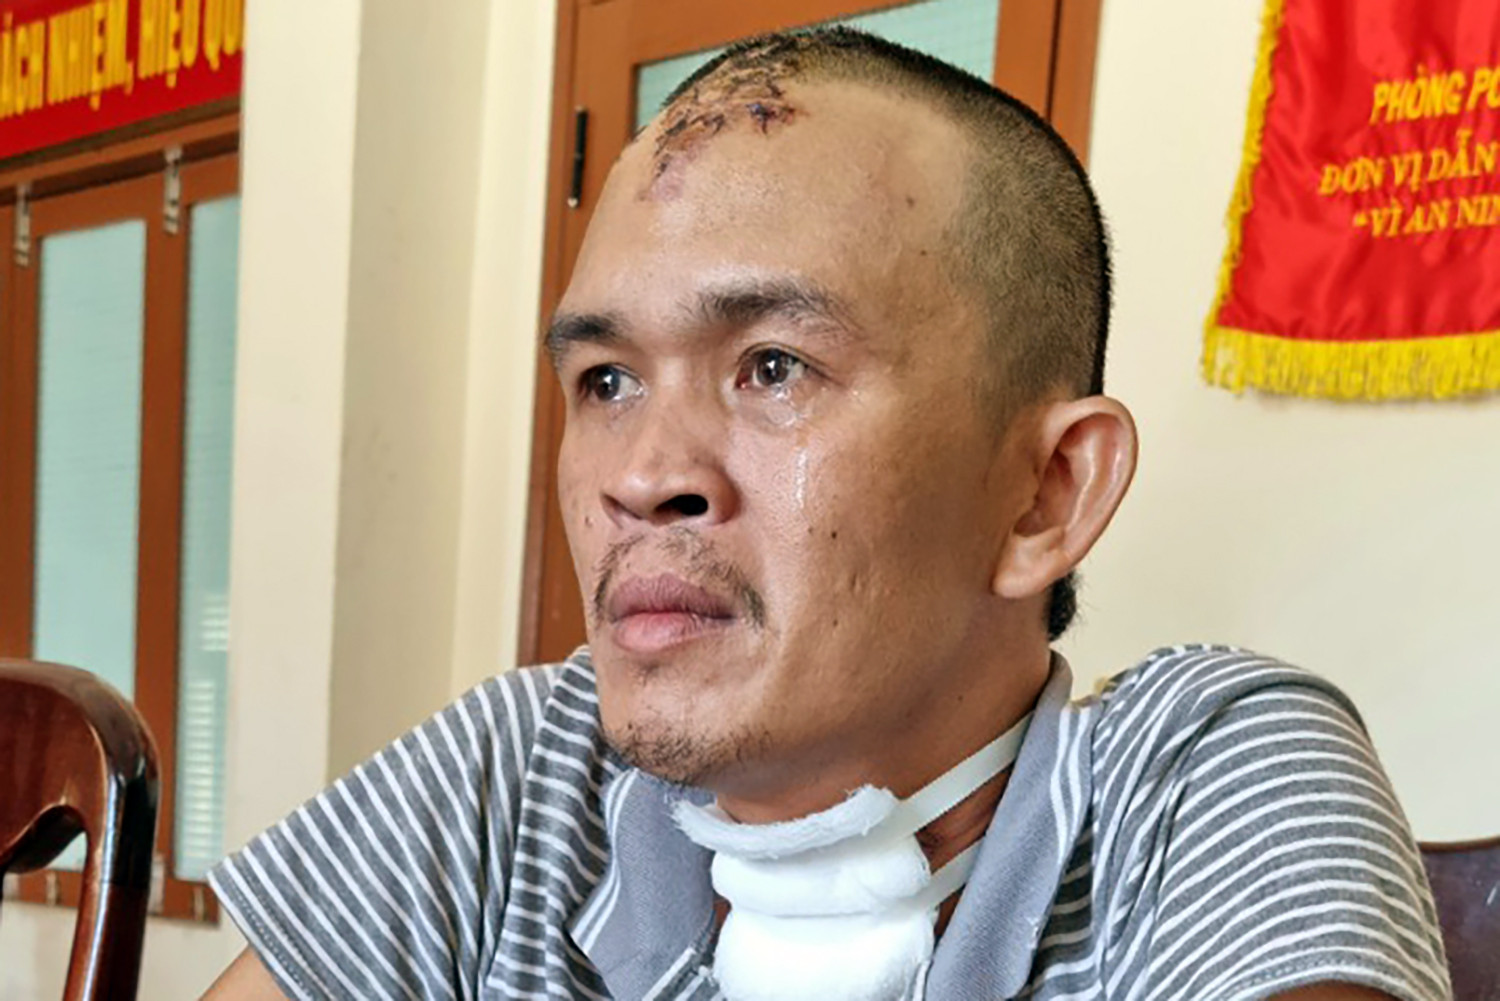 Phú Yên: Bắt giam người chồng máu lạnh ra tay sát hại vợ vì ghen tuông - Ảnh 1